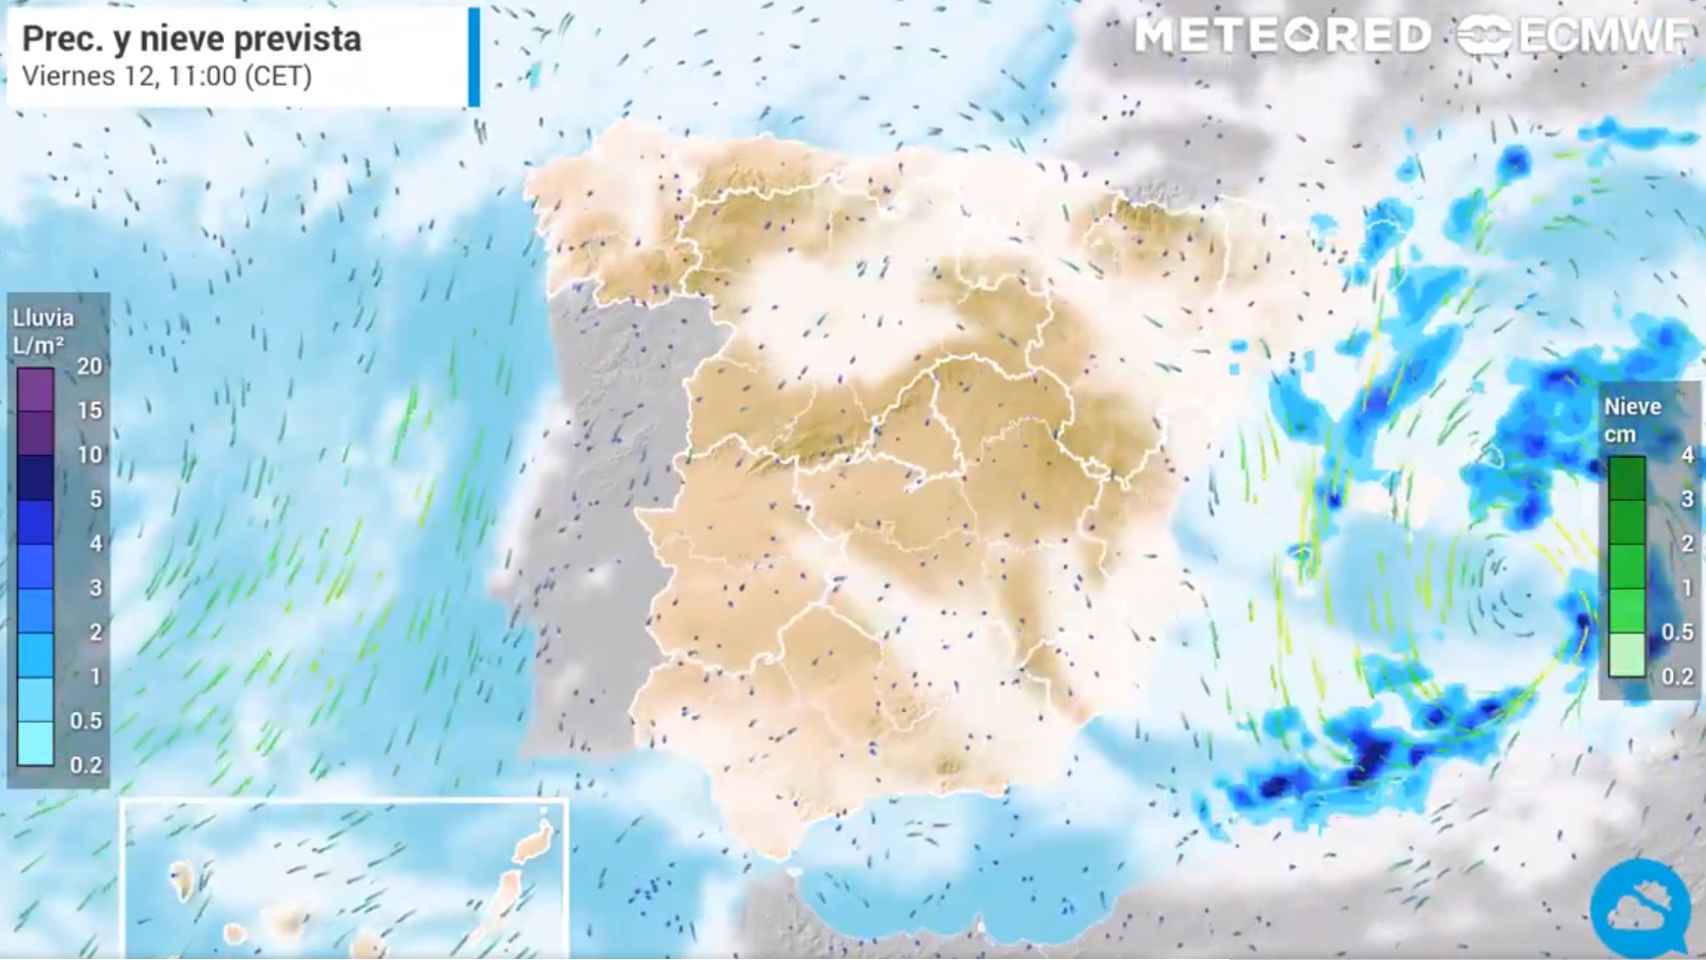 Precipitaciones previstas en España. Meteored.